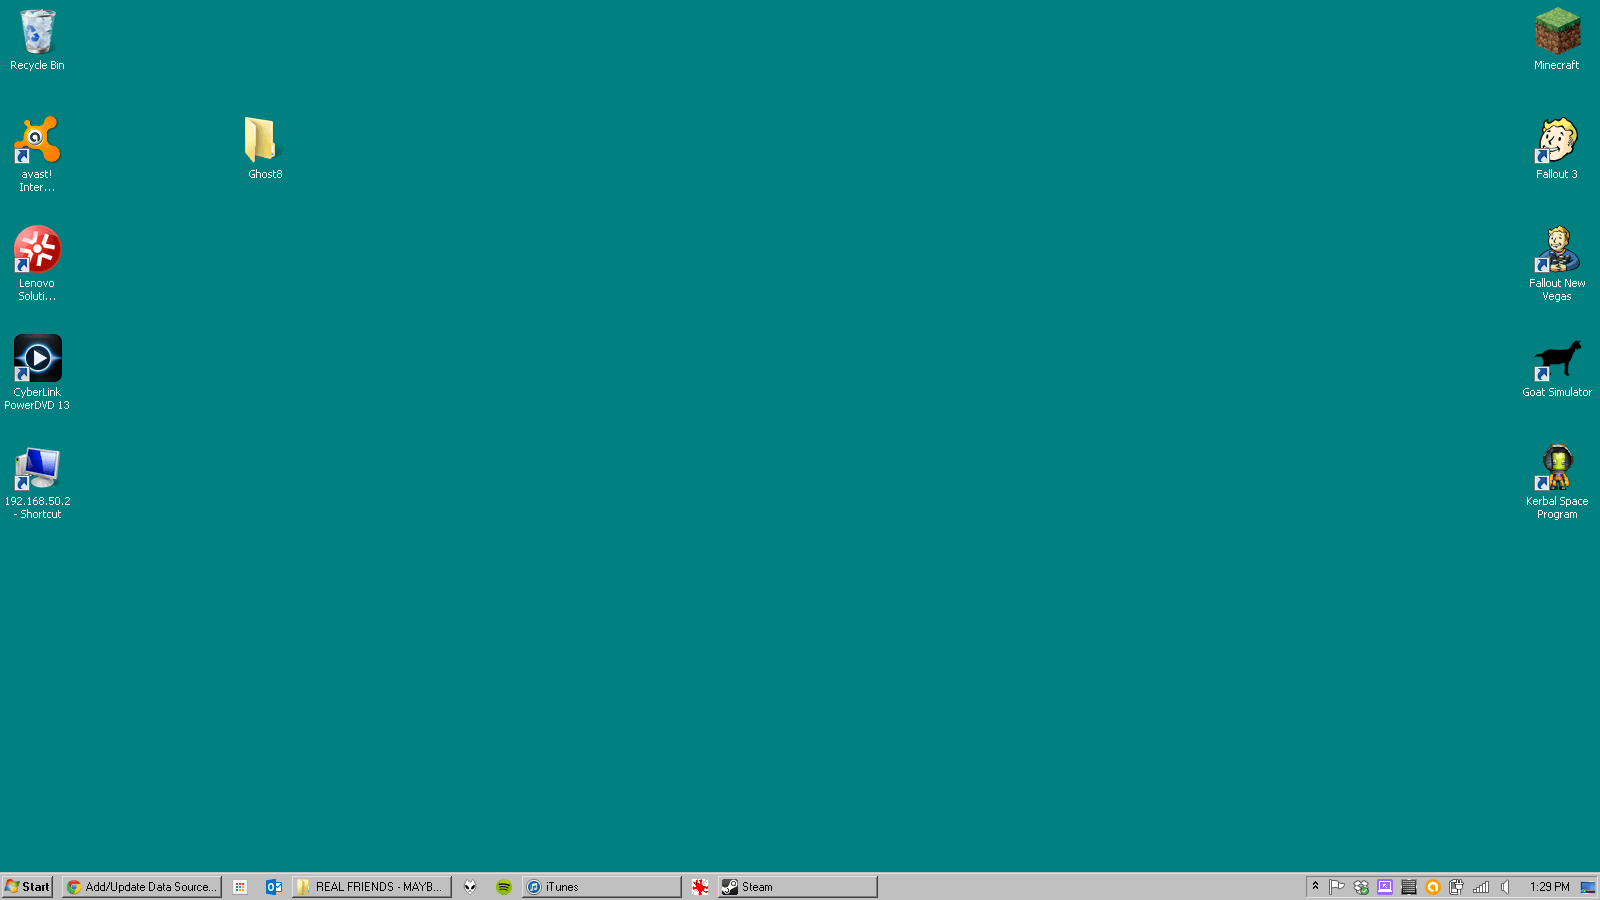 Những bức hình nền mặc định của Windows 95 luôn được đánh giá cao bởi tính cổ điển và độc đáo. Truy cập ngay trang WallpaperDog để có thể sở hữu hình nền mặc định độ phân giải cao của Windows 95 nền xanh và tận hưởng cảm giác thăng hoa khi nhìn thấy màn hình máy tính của mình được trang trí bởi bức tranh đầy sáng tạo này.